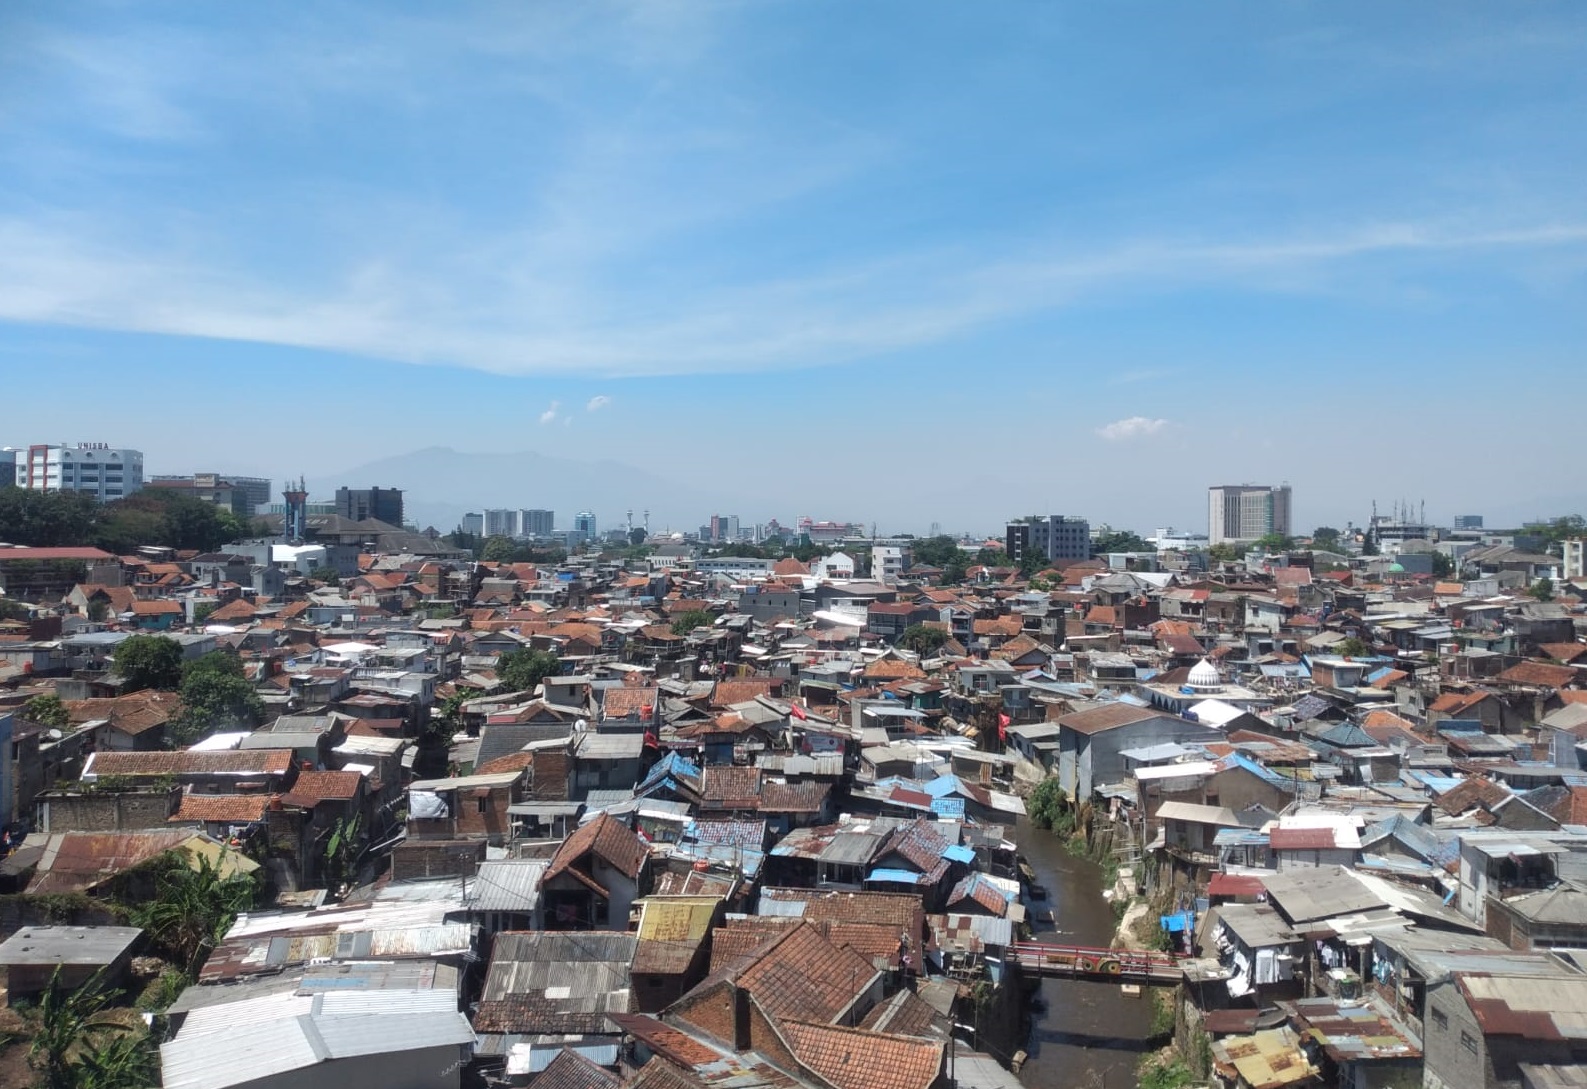 Pemenuhan rumah tinggal yang sudah menjadi kebutuhan dasar warga Kota Bandung. Namun sampai saat ini masih jauh dari harapan.